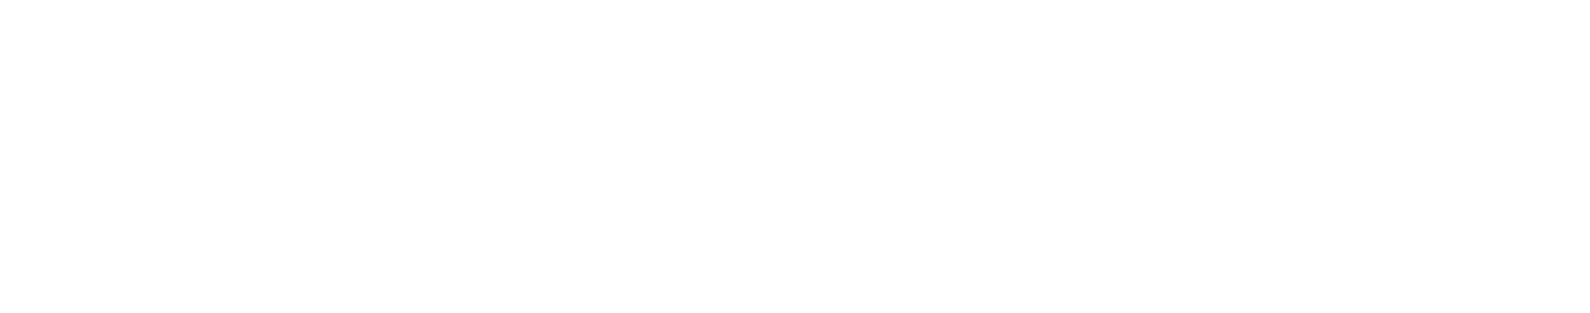 Sono Logo groß für dunkle Hintergründe (transparentes PNG)